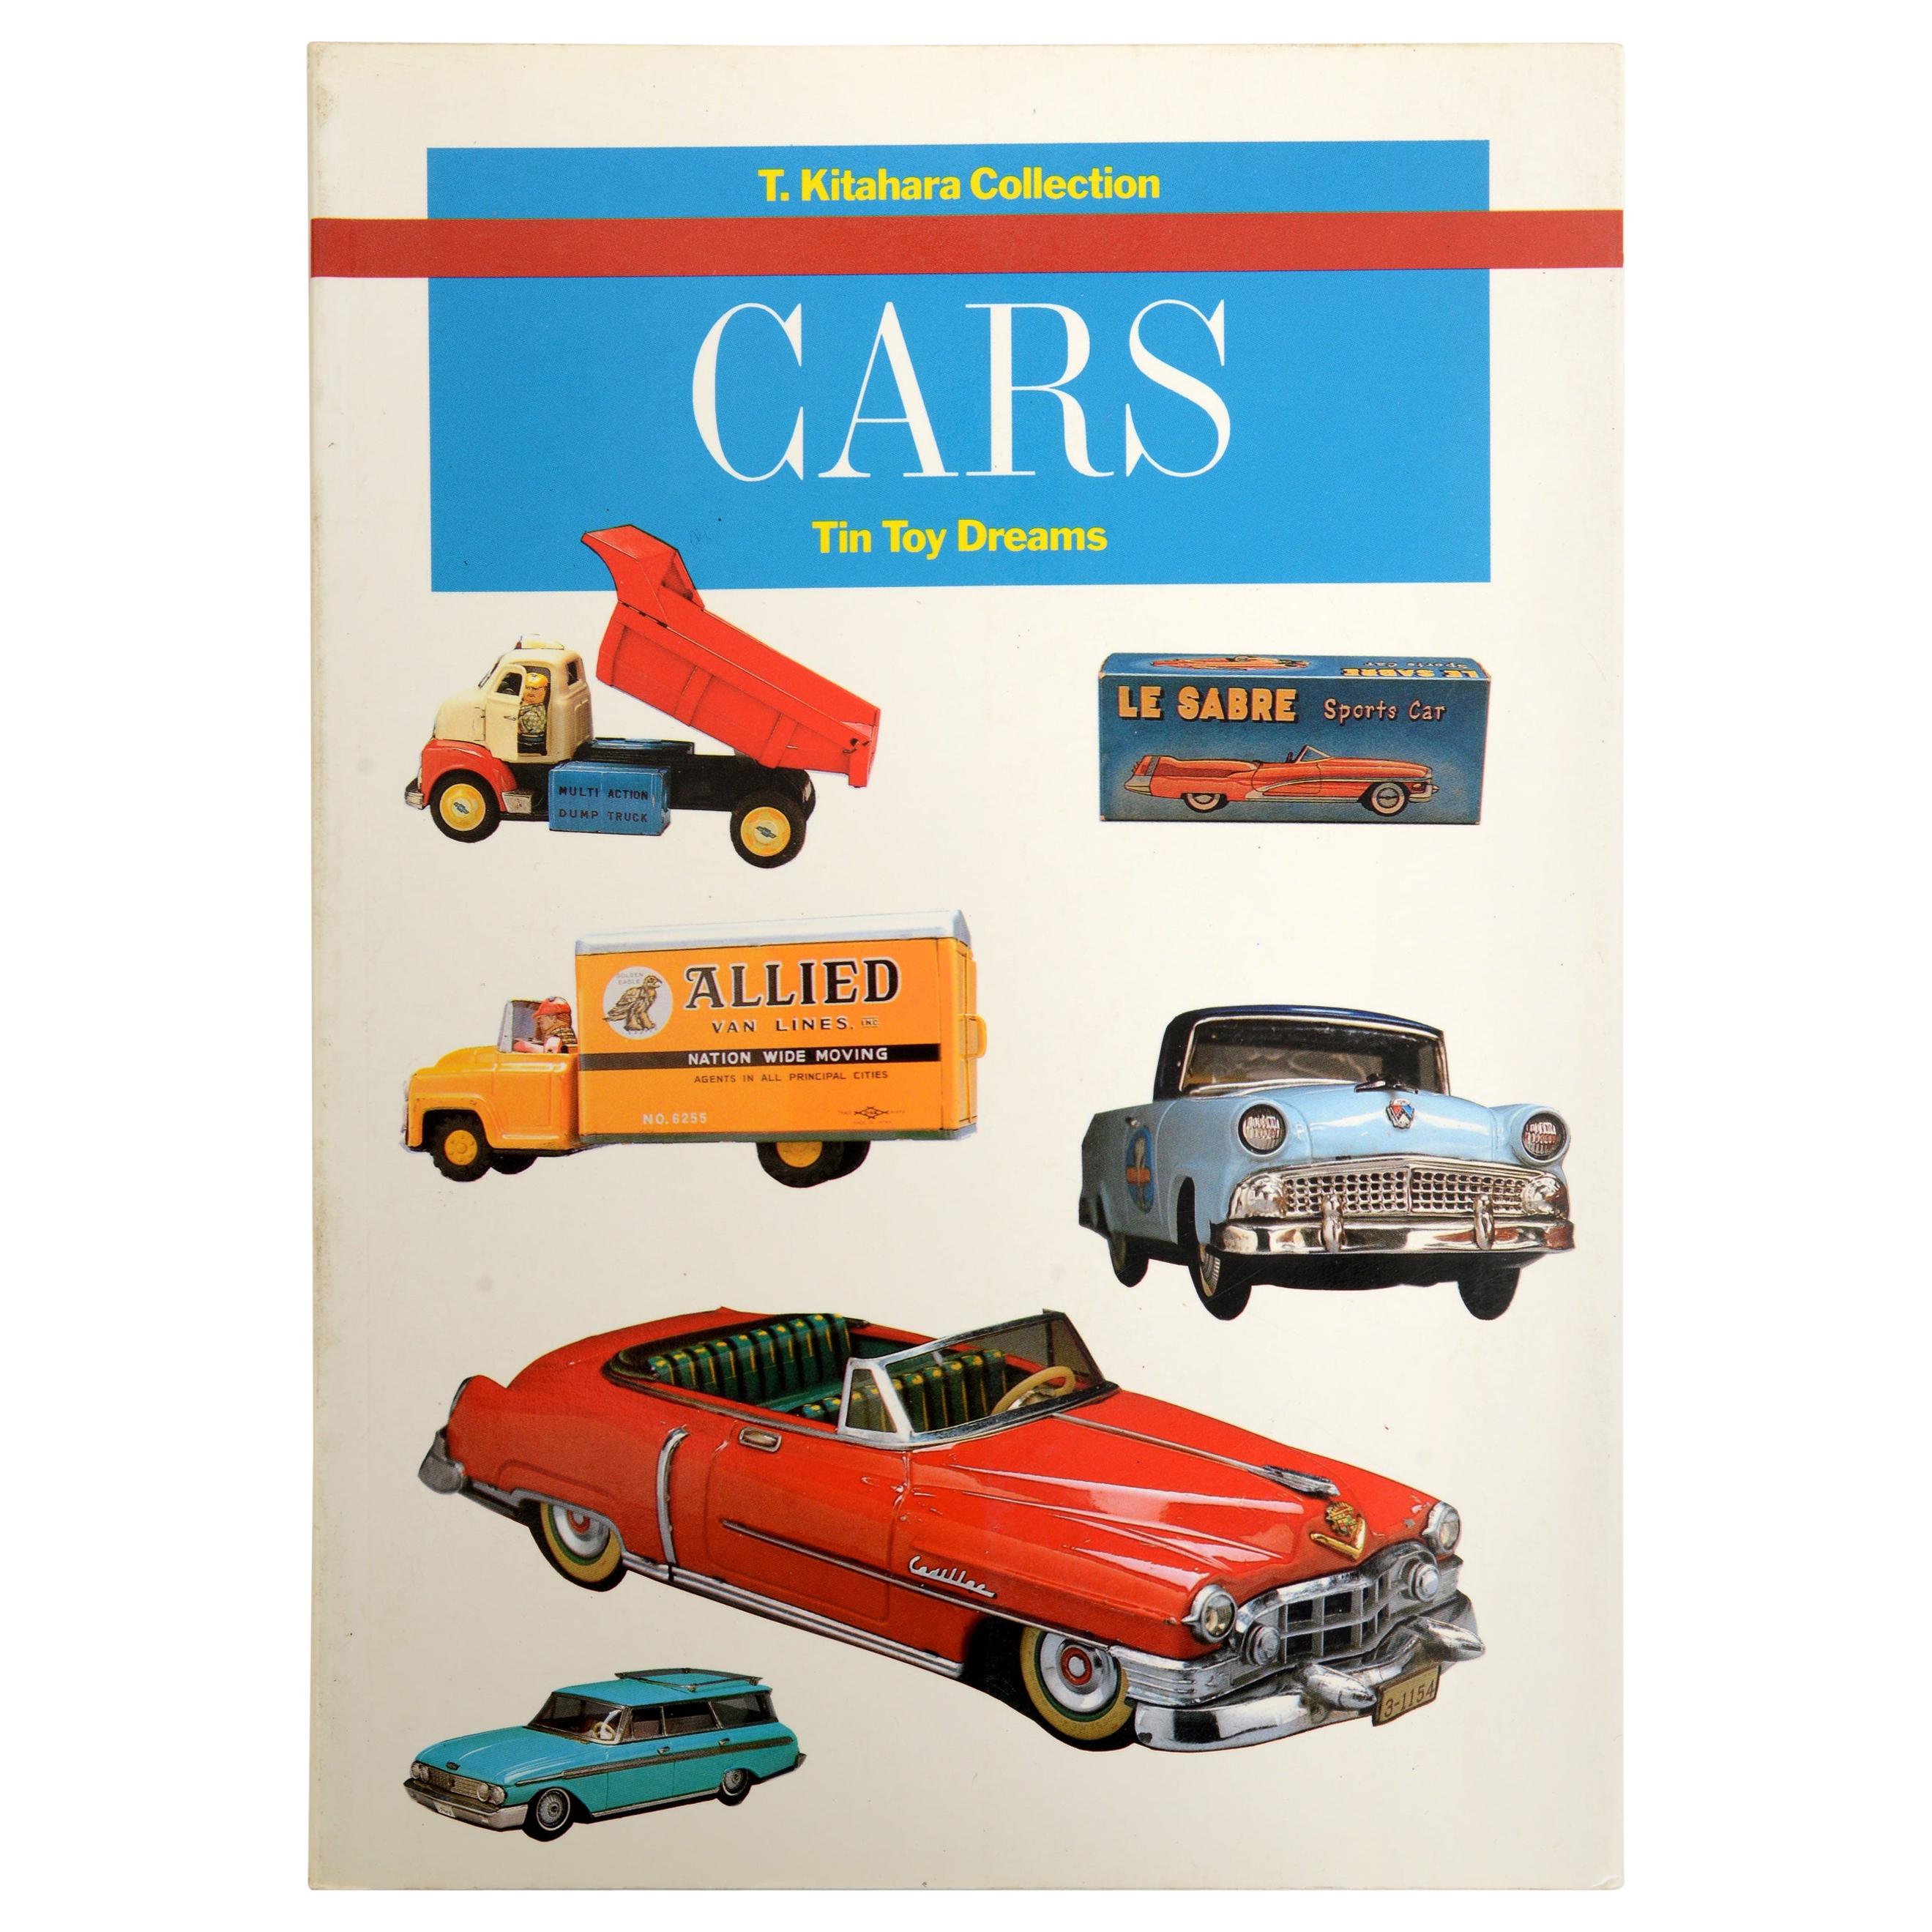 Cars Tin Toy Dreams by Teruhisa Kitahara, First Edition